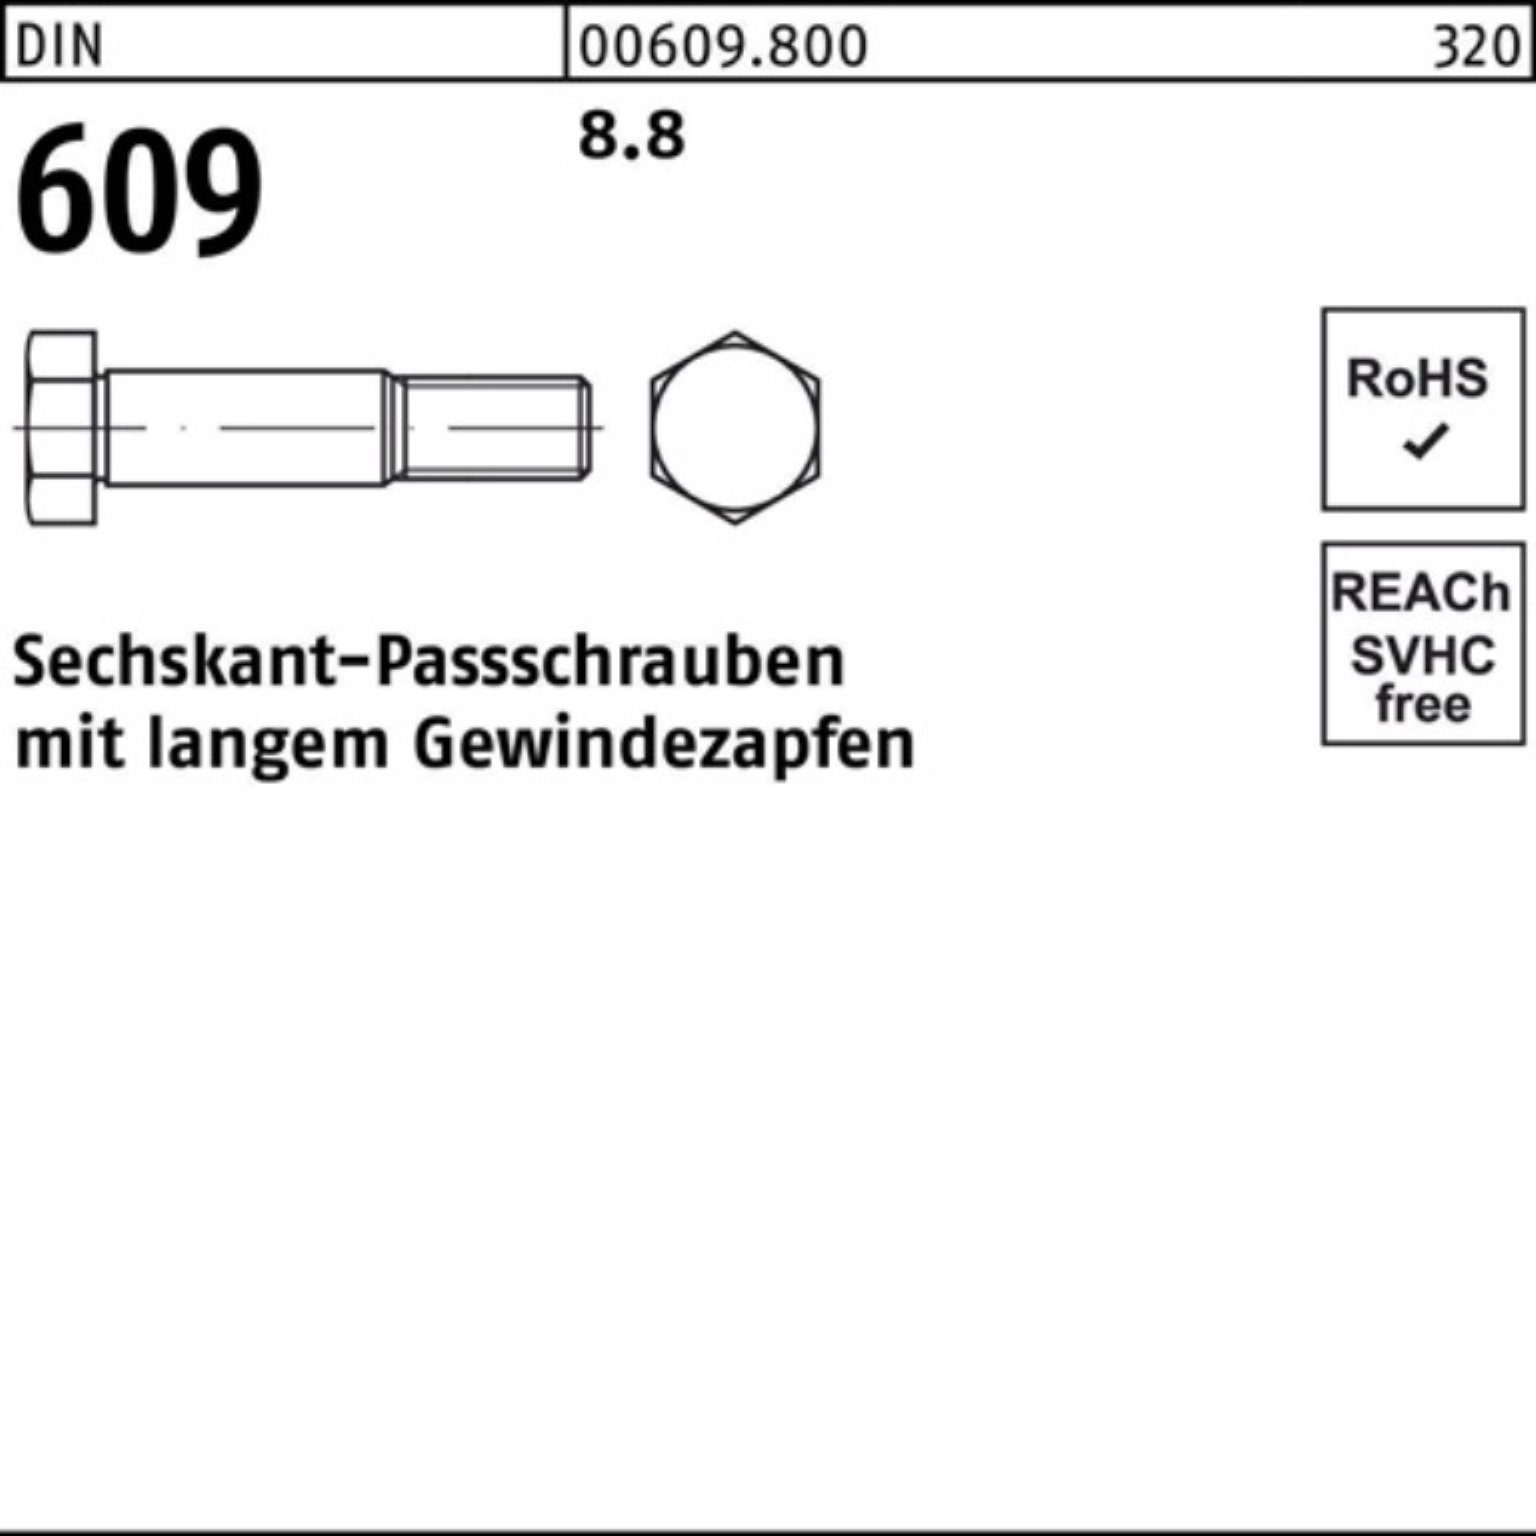 130 100er Reyher Schraube M24x Sechskantpassschraube Gewindezapfen 609 DIN Pack langem